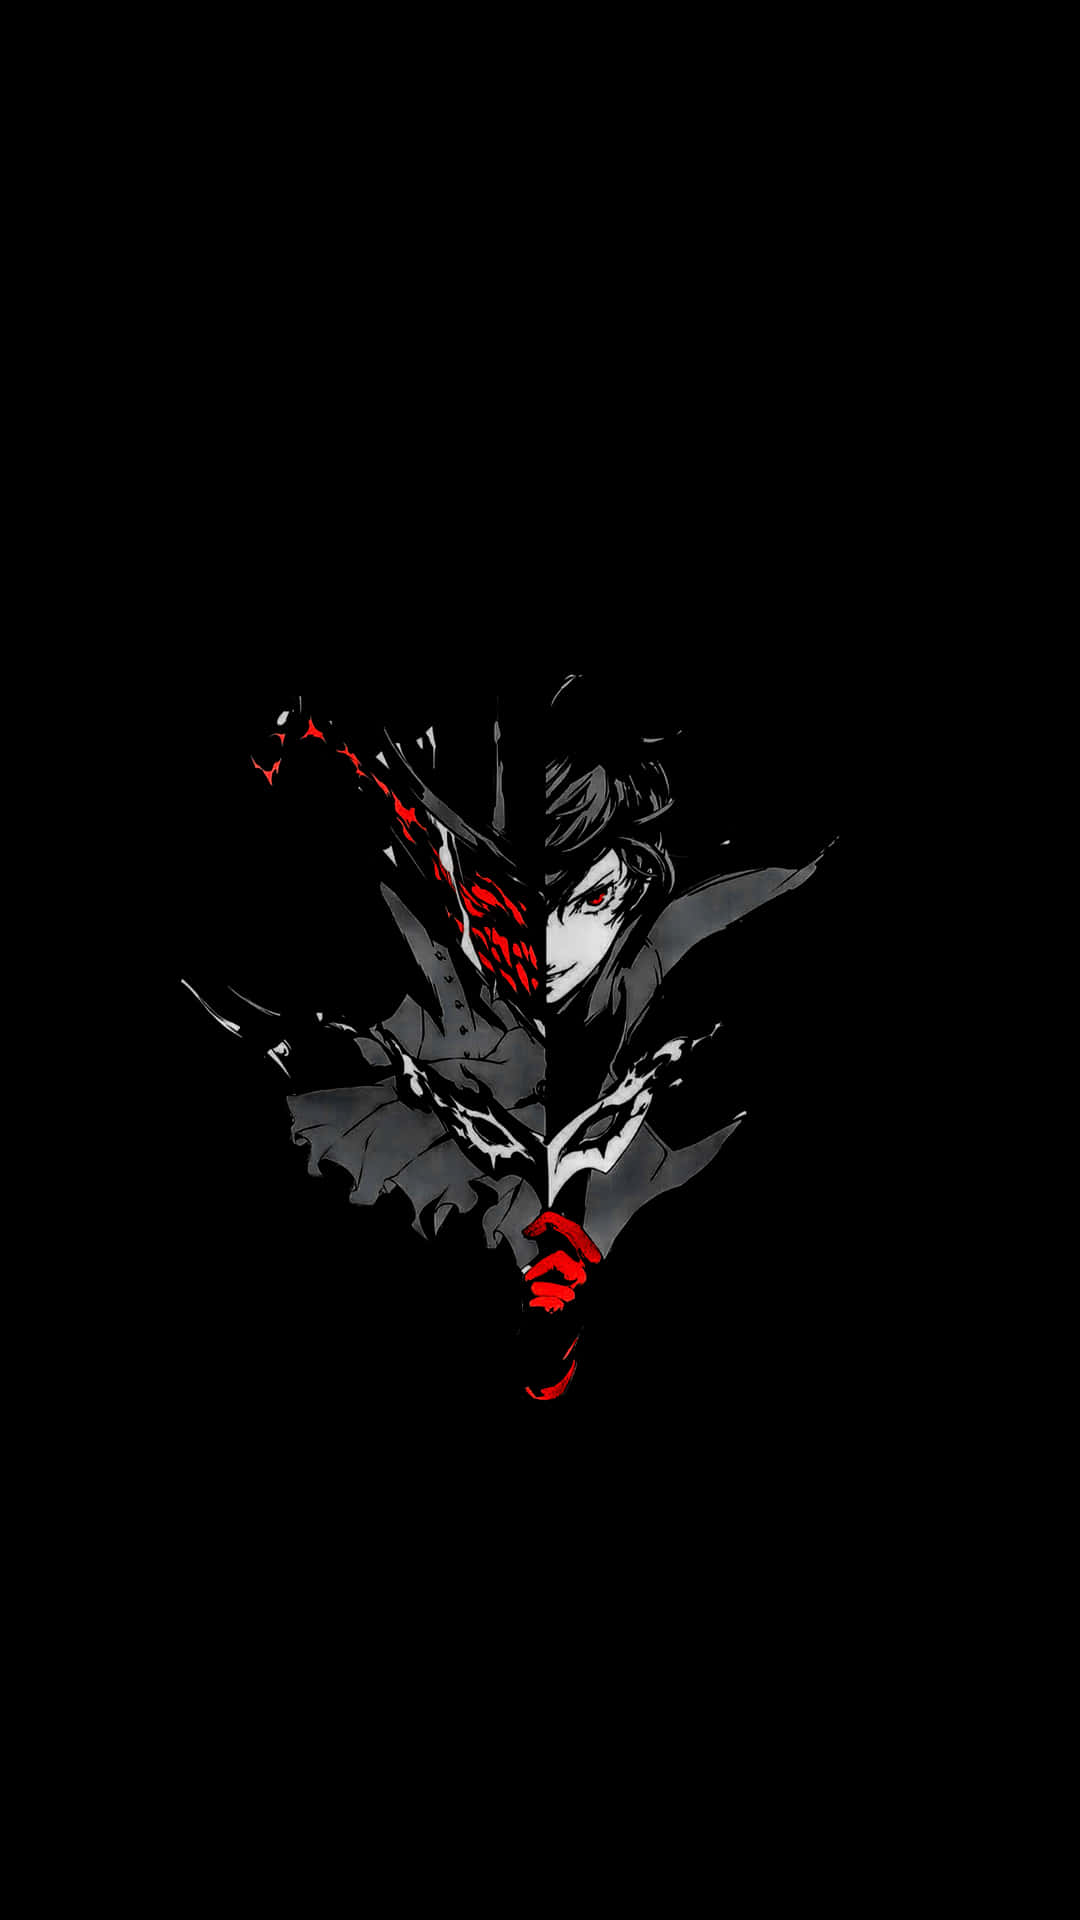 Persona5 Joker Pixel 3xl Amoled Bakgrundsbild.